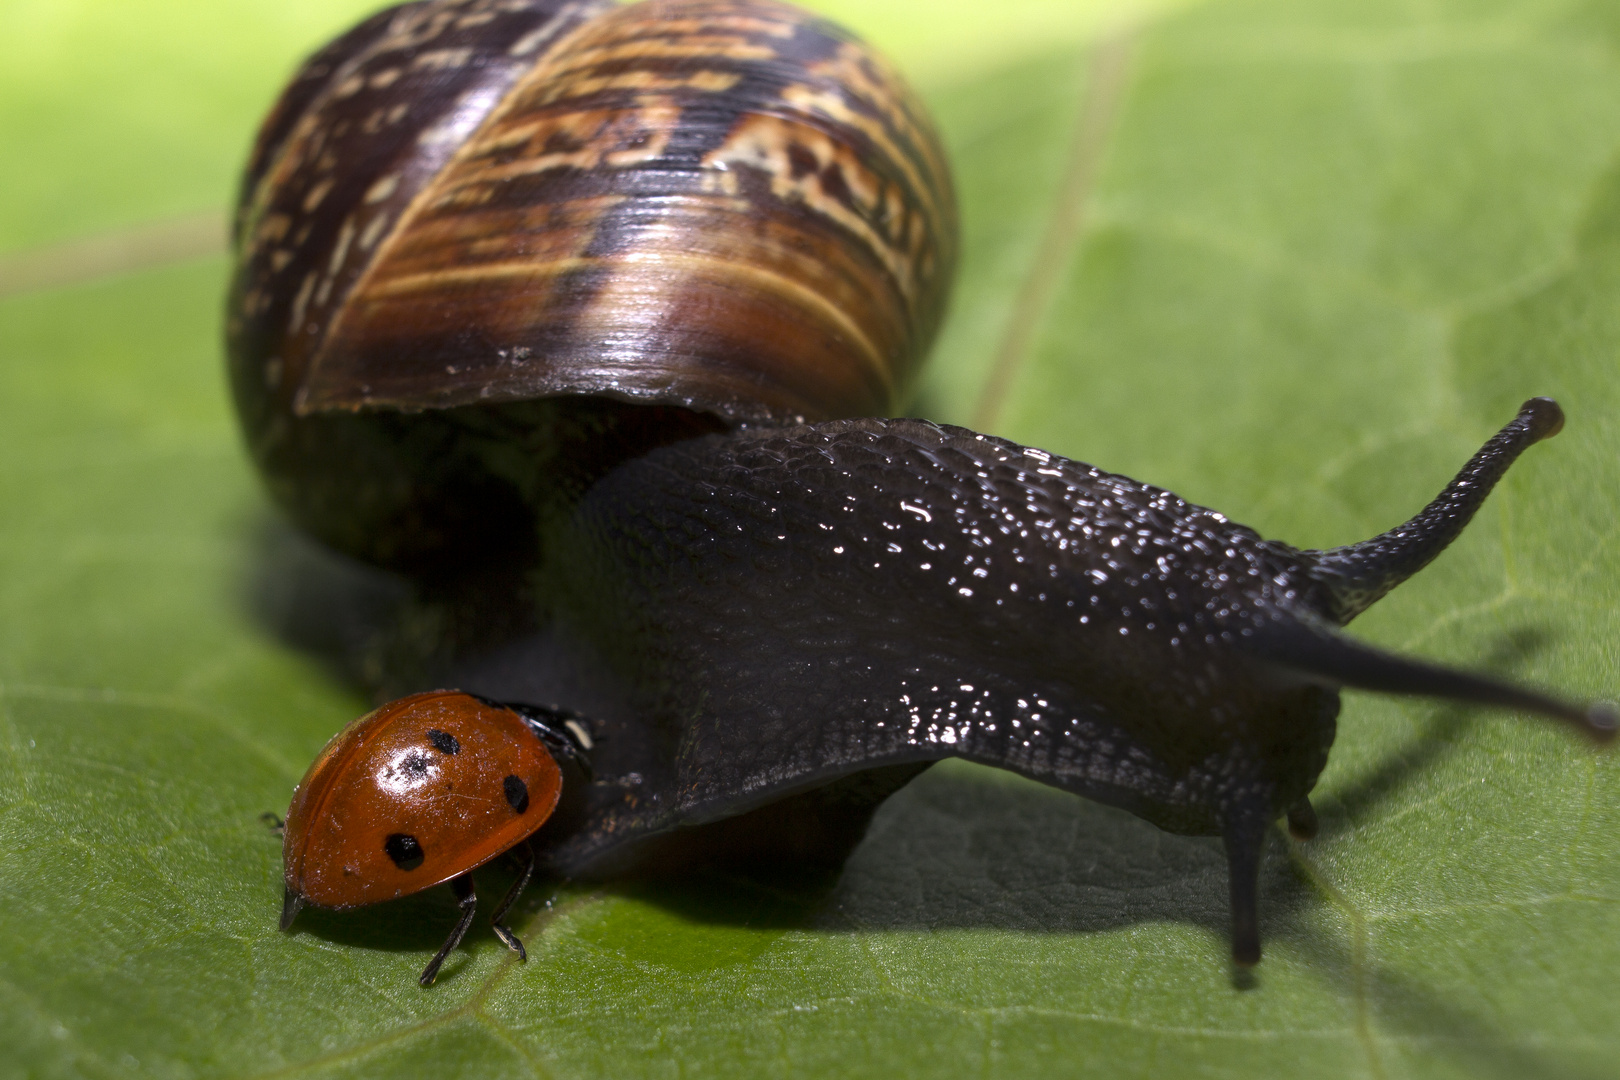 Ladybird meets Snail